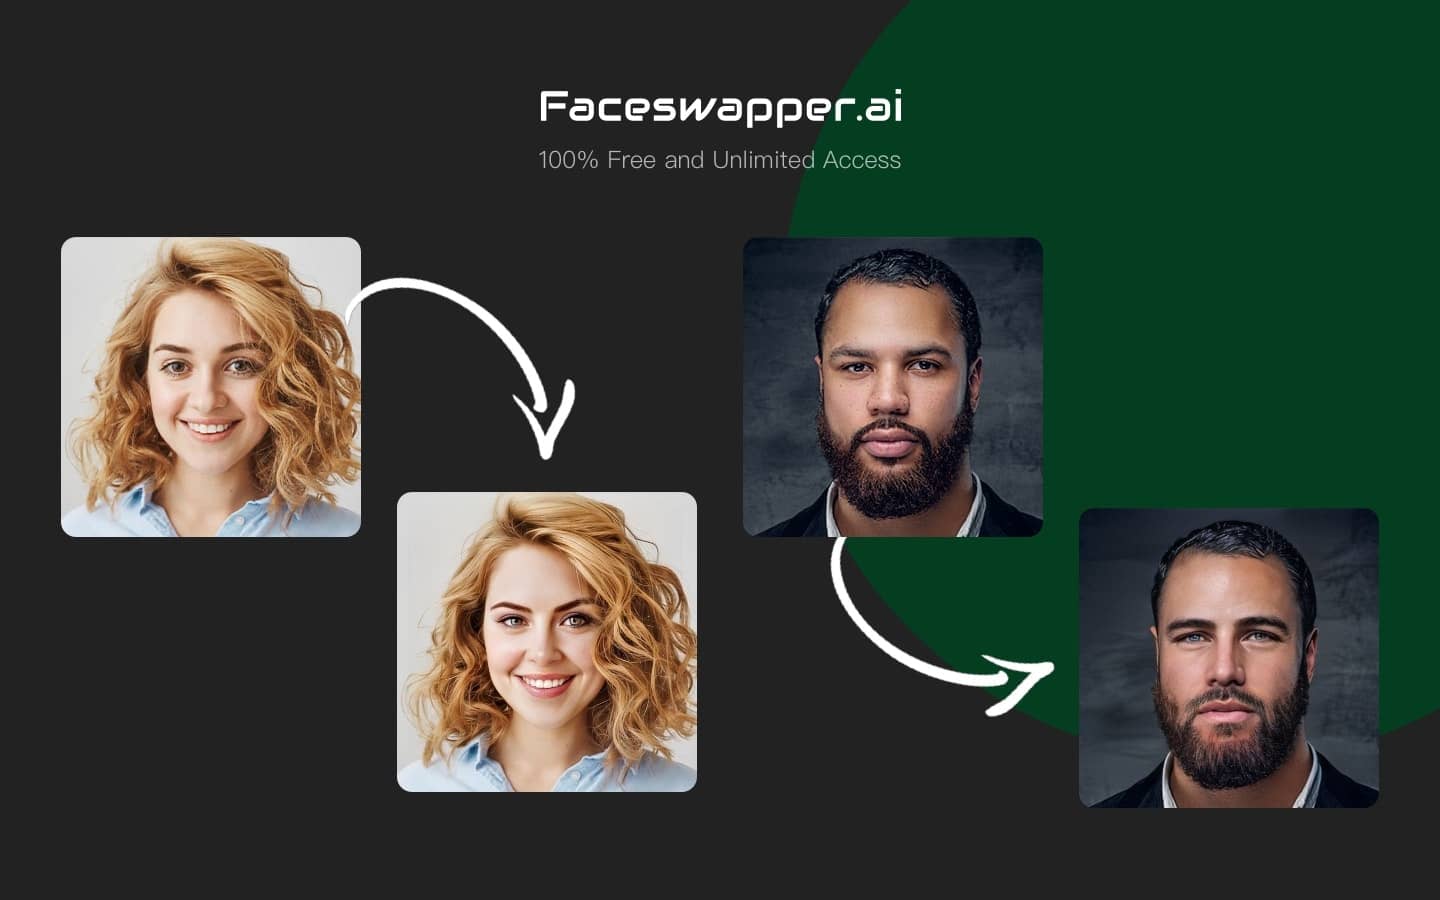 FaceSwapper هي أداة ممتعة وسهلة الاستخدام عبر الإنترنت تتيح لك استبدال وجه شخص في صورة بآخر. سواء كنت ترغب في تبادل الوجوه مع المشاهير المفضلين لديك أو مجرد الاستمتاع بتبديل الوجوه مع الأصدقاء، فإن FaceSwapper يجعل الأمر سهلاً وممتعًا.